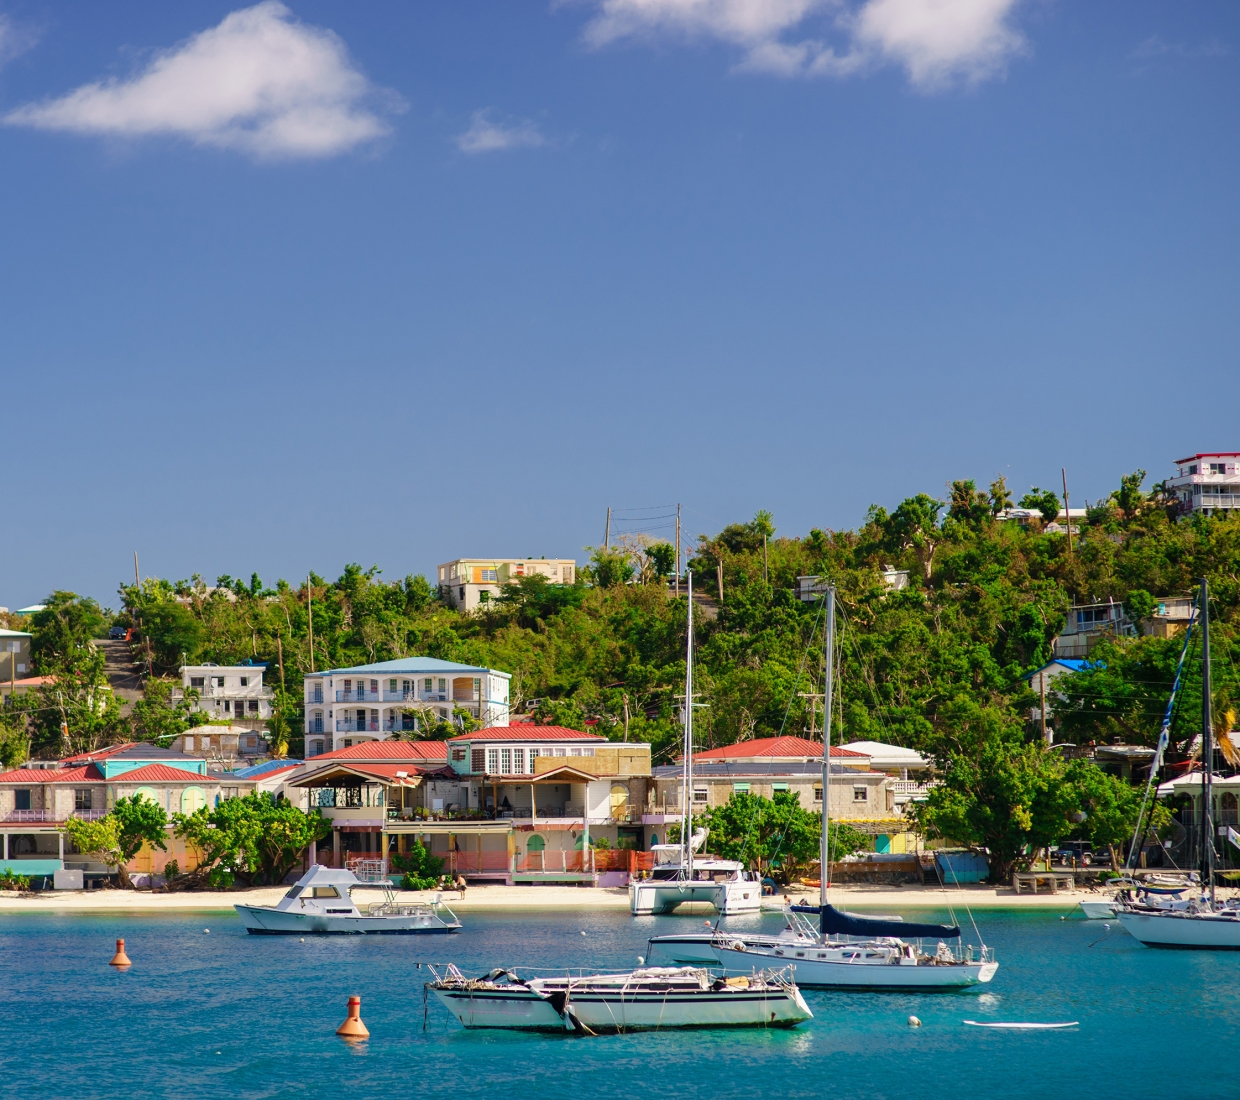 Seleção dos melhores e mais bonitos hotéis e casas de férias em São Tomé